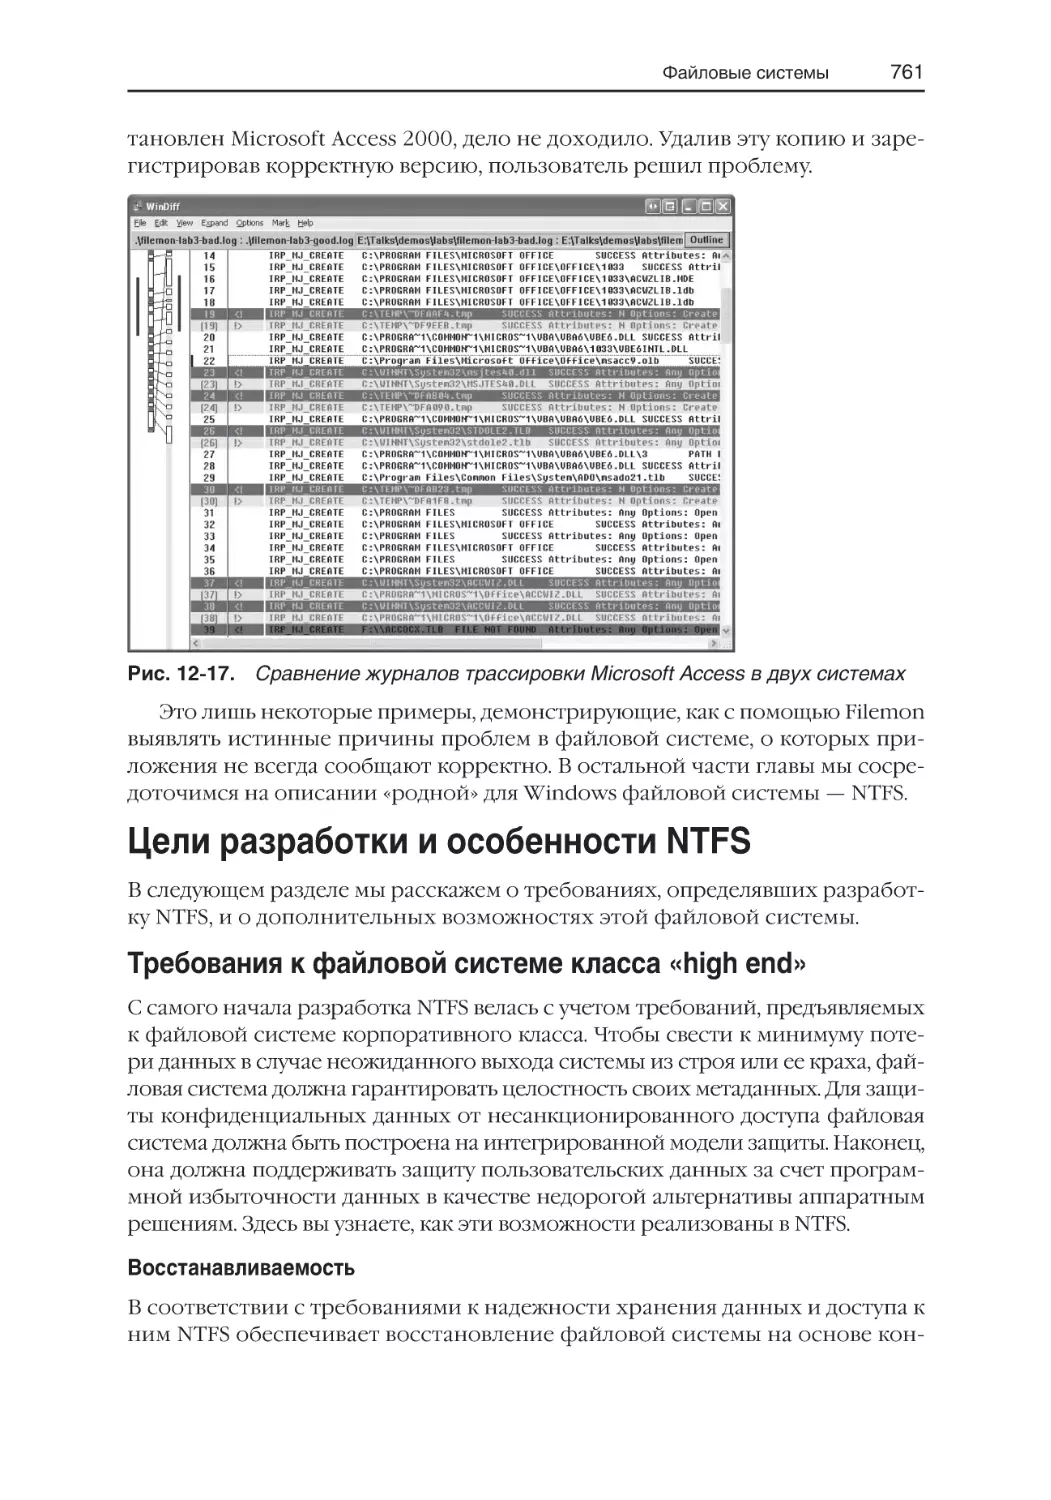 Цели разработки и особенности NTFS
Требования к файловой системе класса «high end»